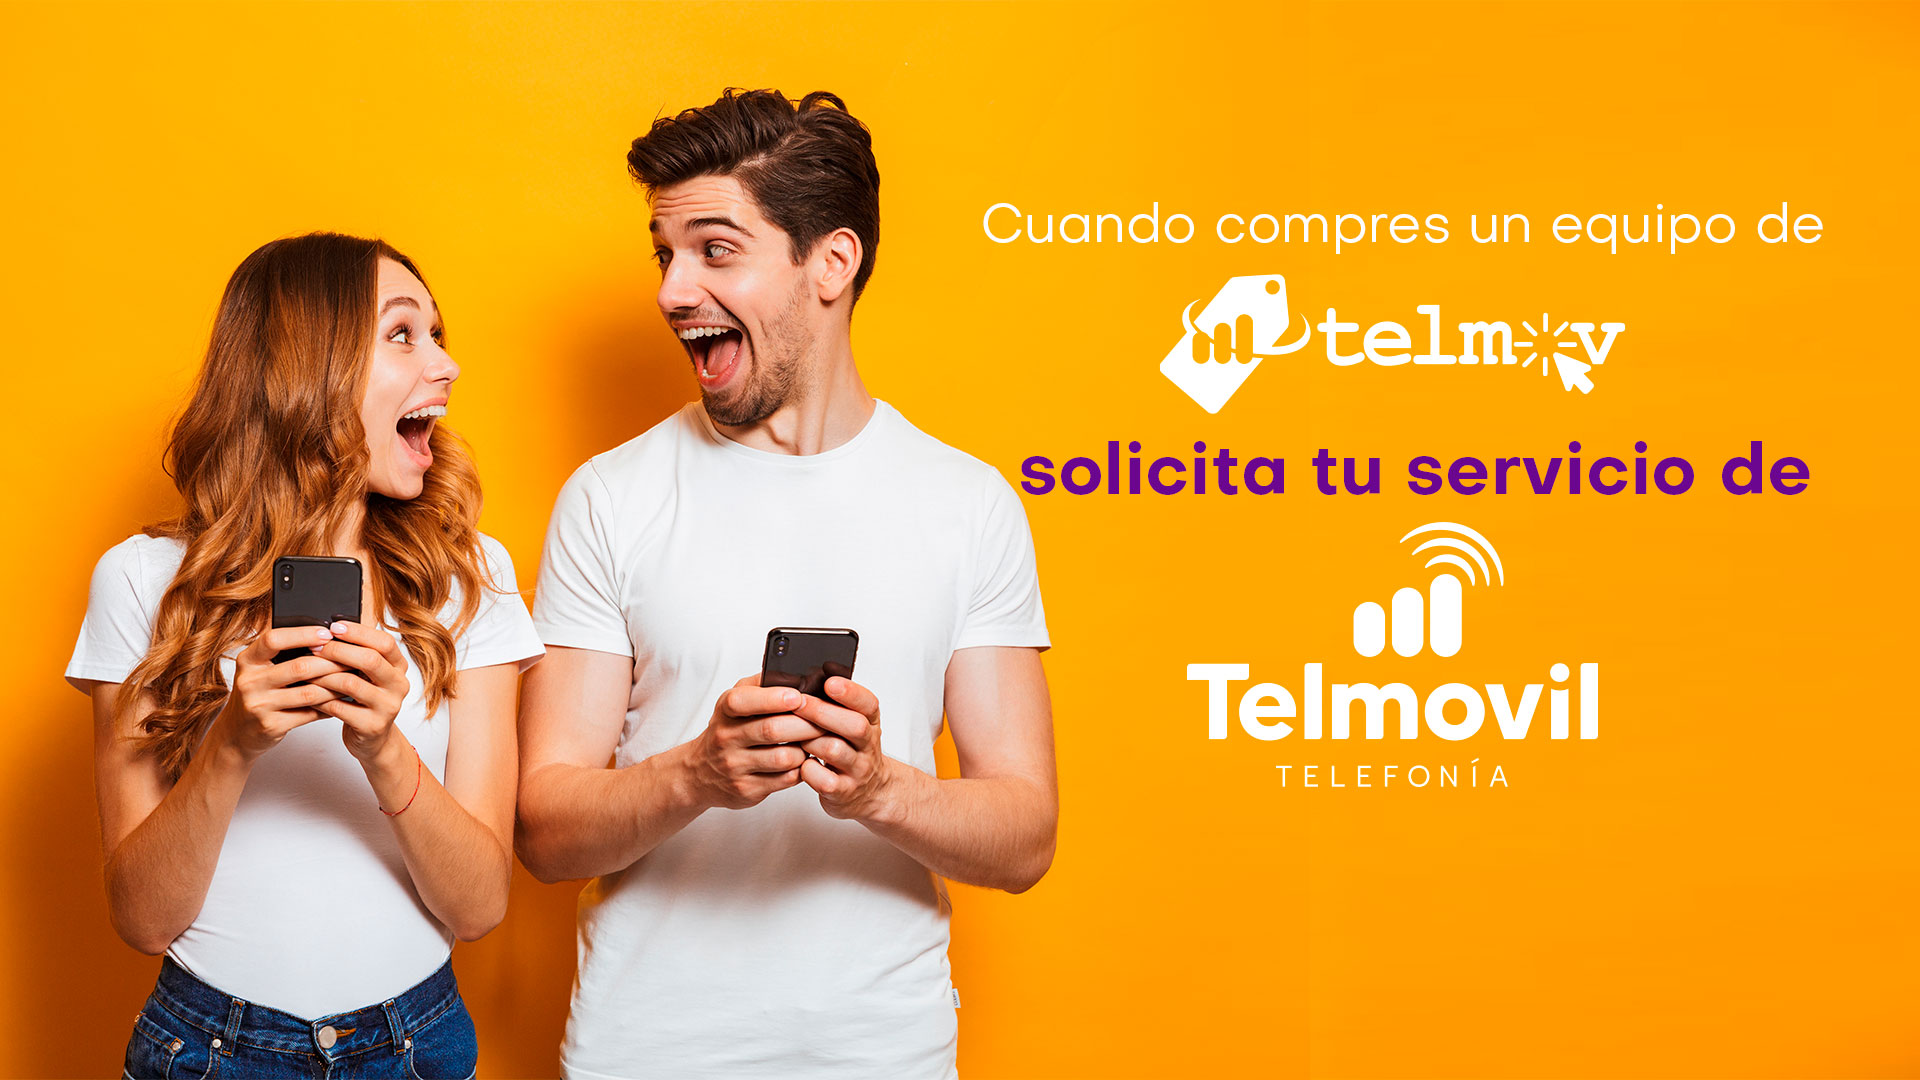 Cuando compres un equipo en Telmov solicita tu servicio en Telmovil.